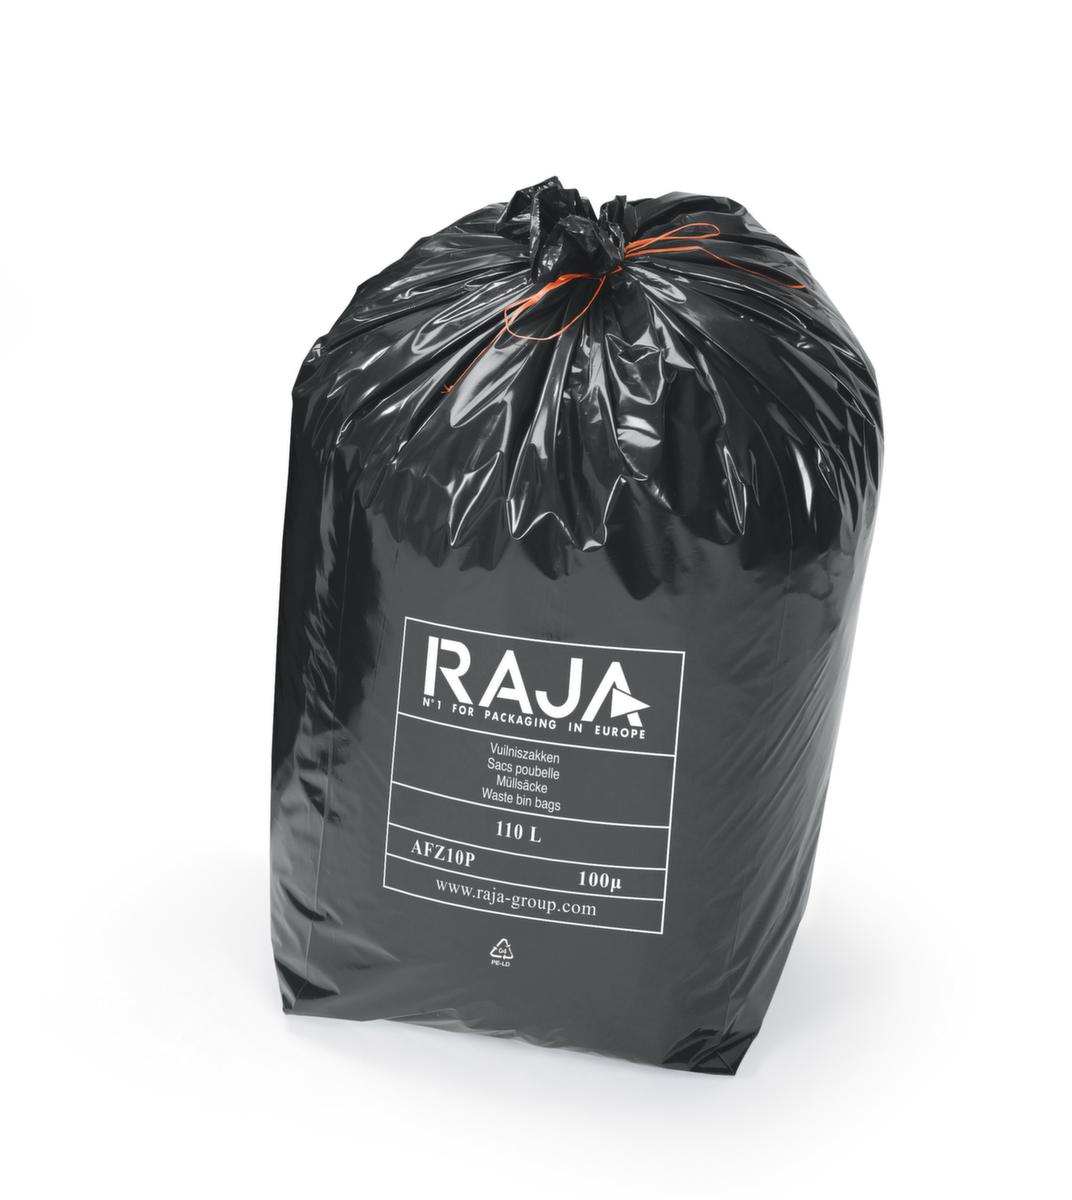 Raja Sac poubelle pour déchets lourds, 110 l, noir  ZOOM